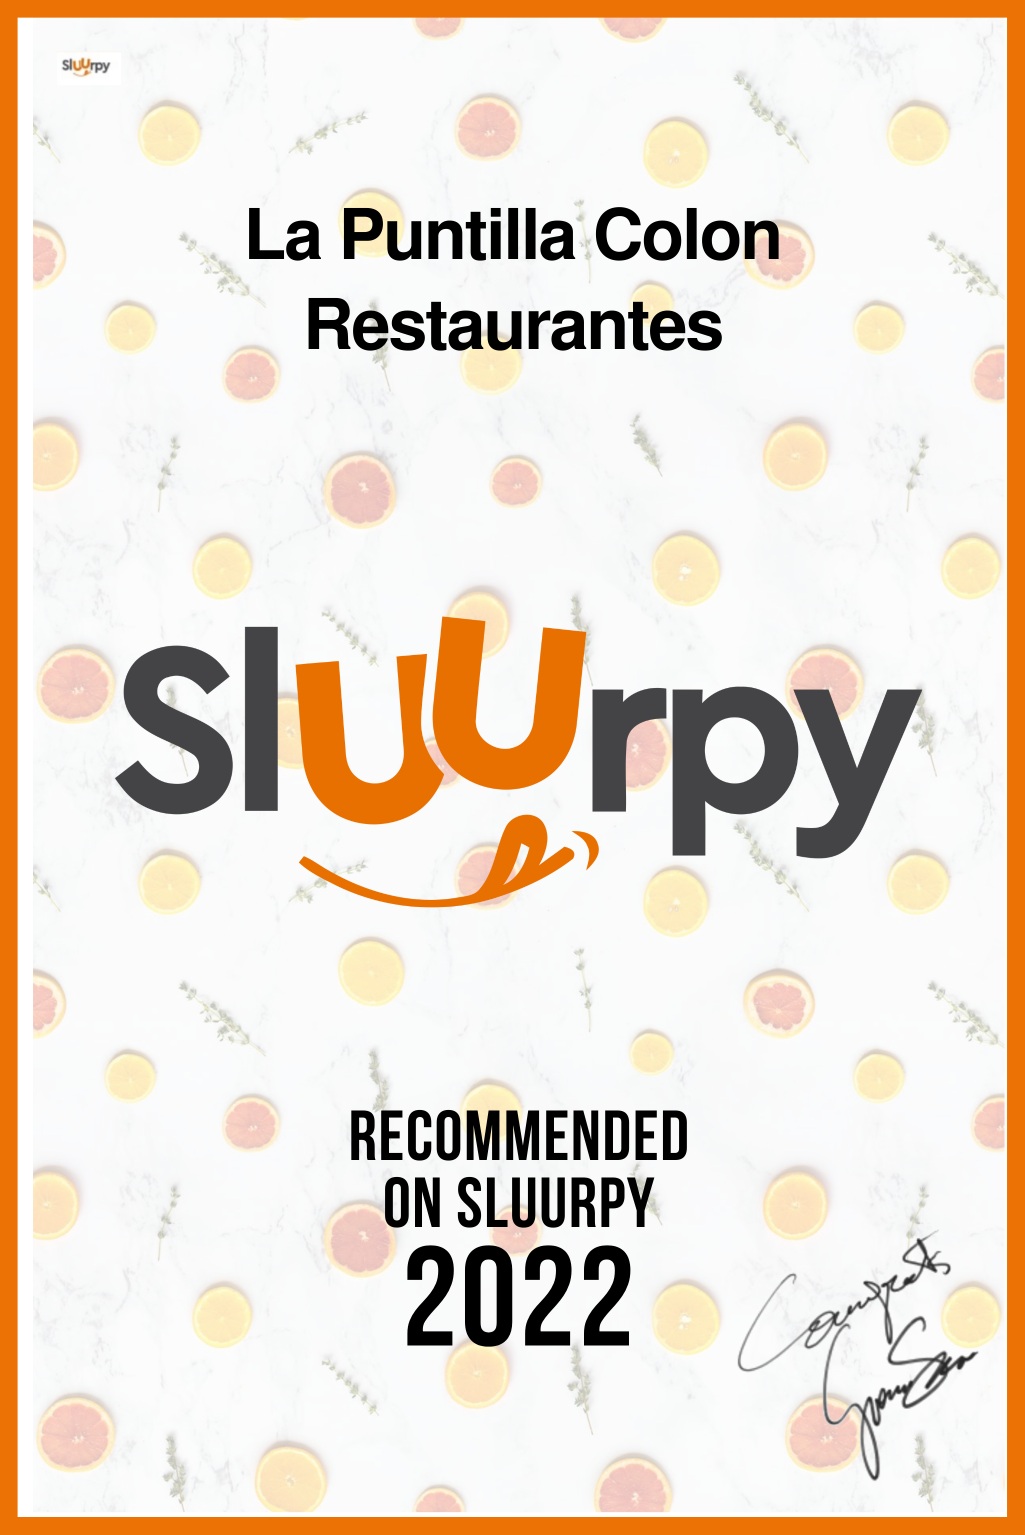 La Puntilla Colon Restaurantes - Sluurpy